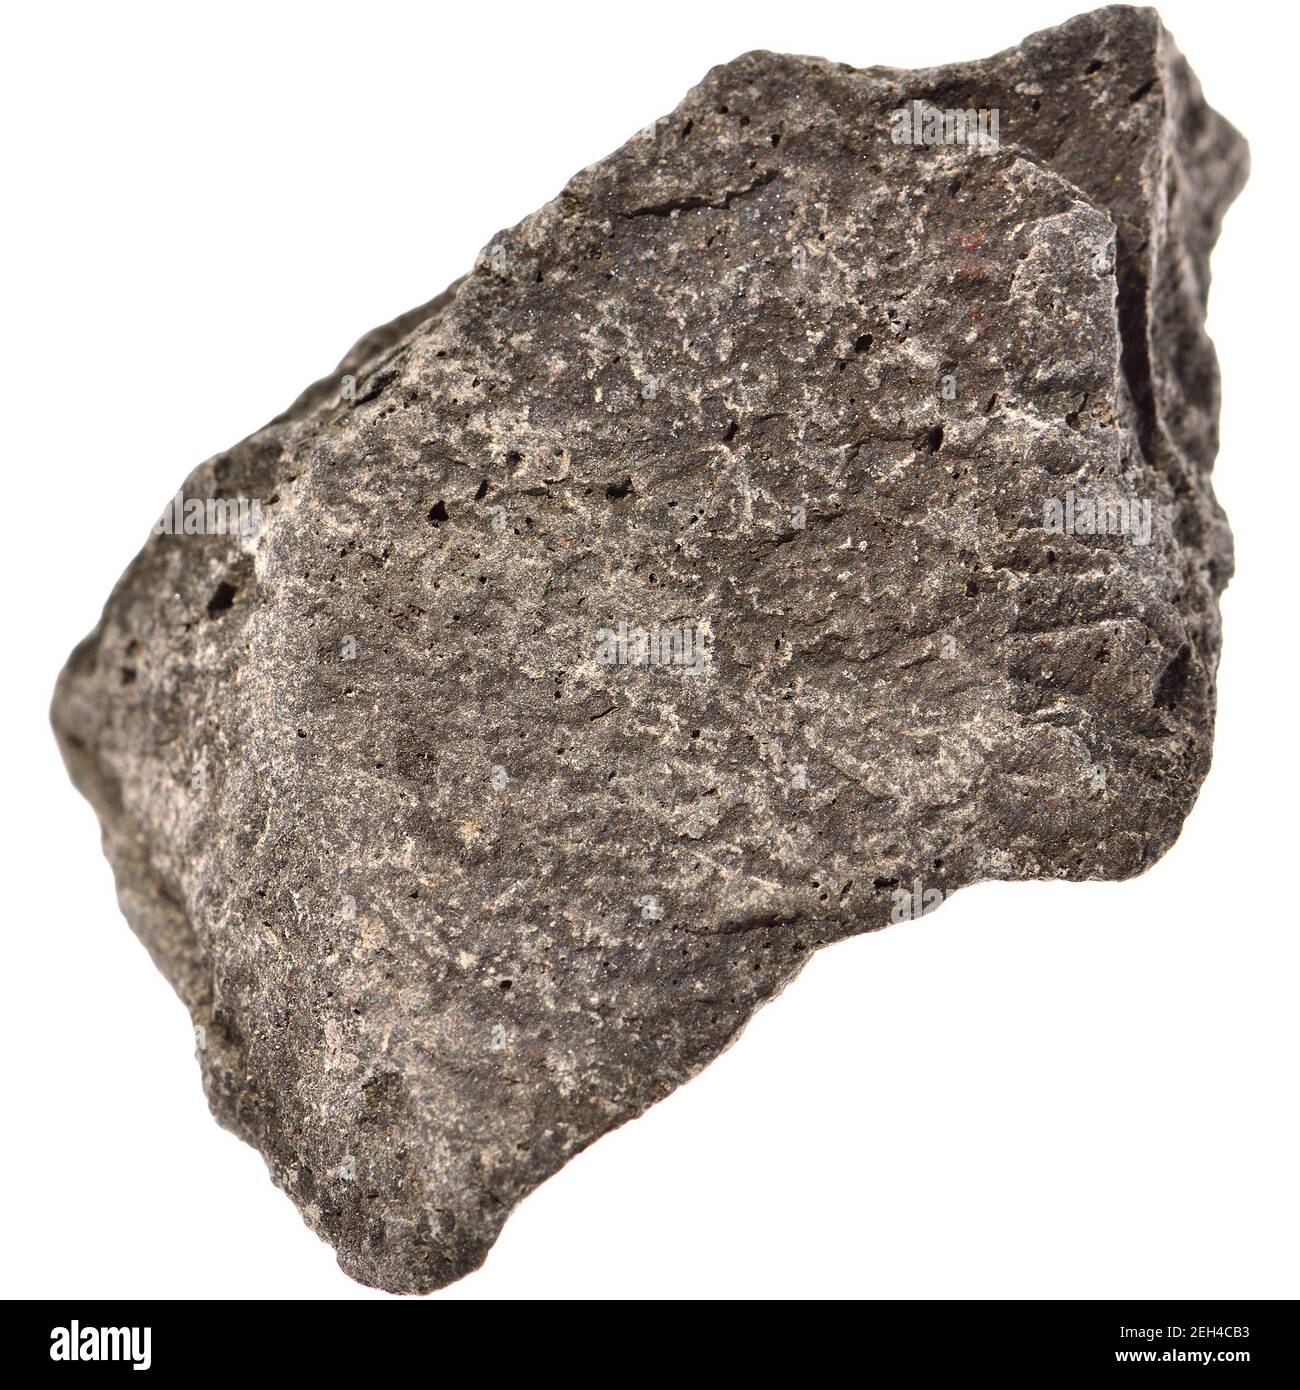 Ironstone - roche sédimentaire à partir de laquelle le fer peut être fondé Banque D'Images